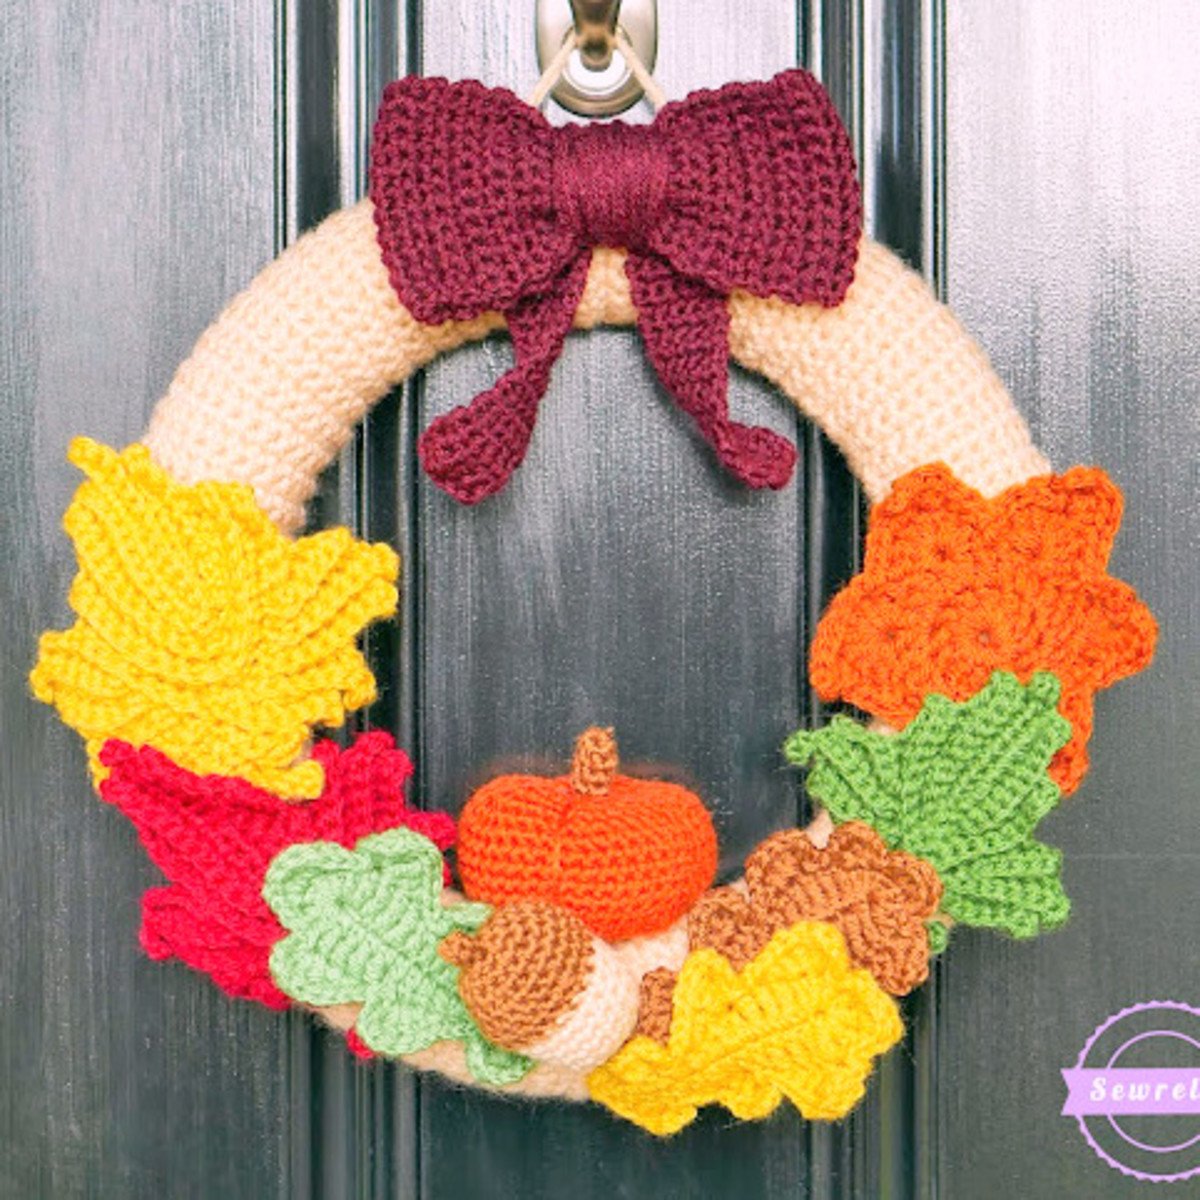 Autumn crochet wreath